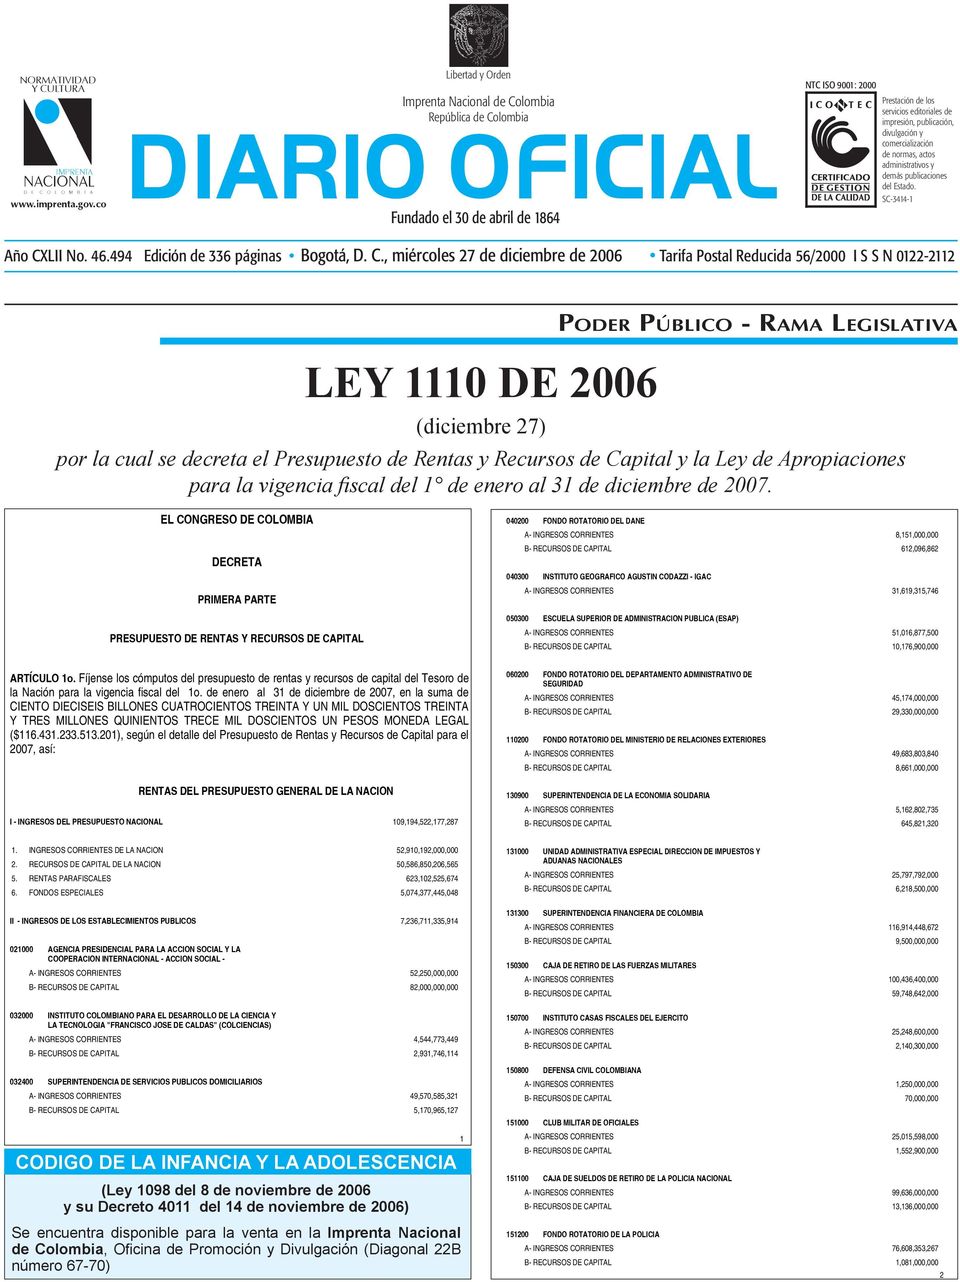 Edición de 336 páginas Bogotá, D C, miércoles 27 de diciembre de 2006 Tarifa Postal Reducida 56/2000 I S S N 0122-2112 LEY 1110 DE 2006 (diciembre 27) Poder Público - Rama Legislativa por la cual se